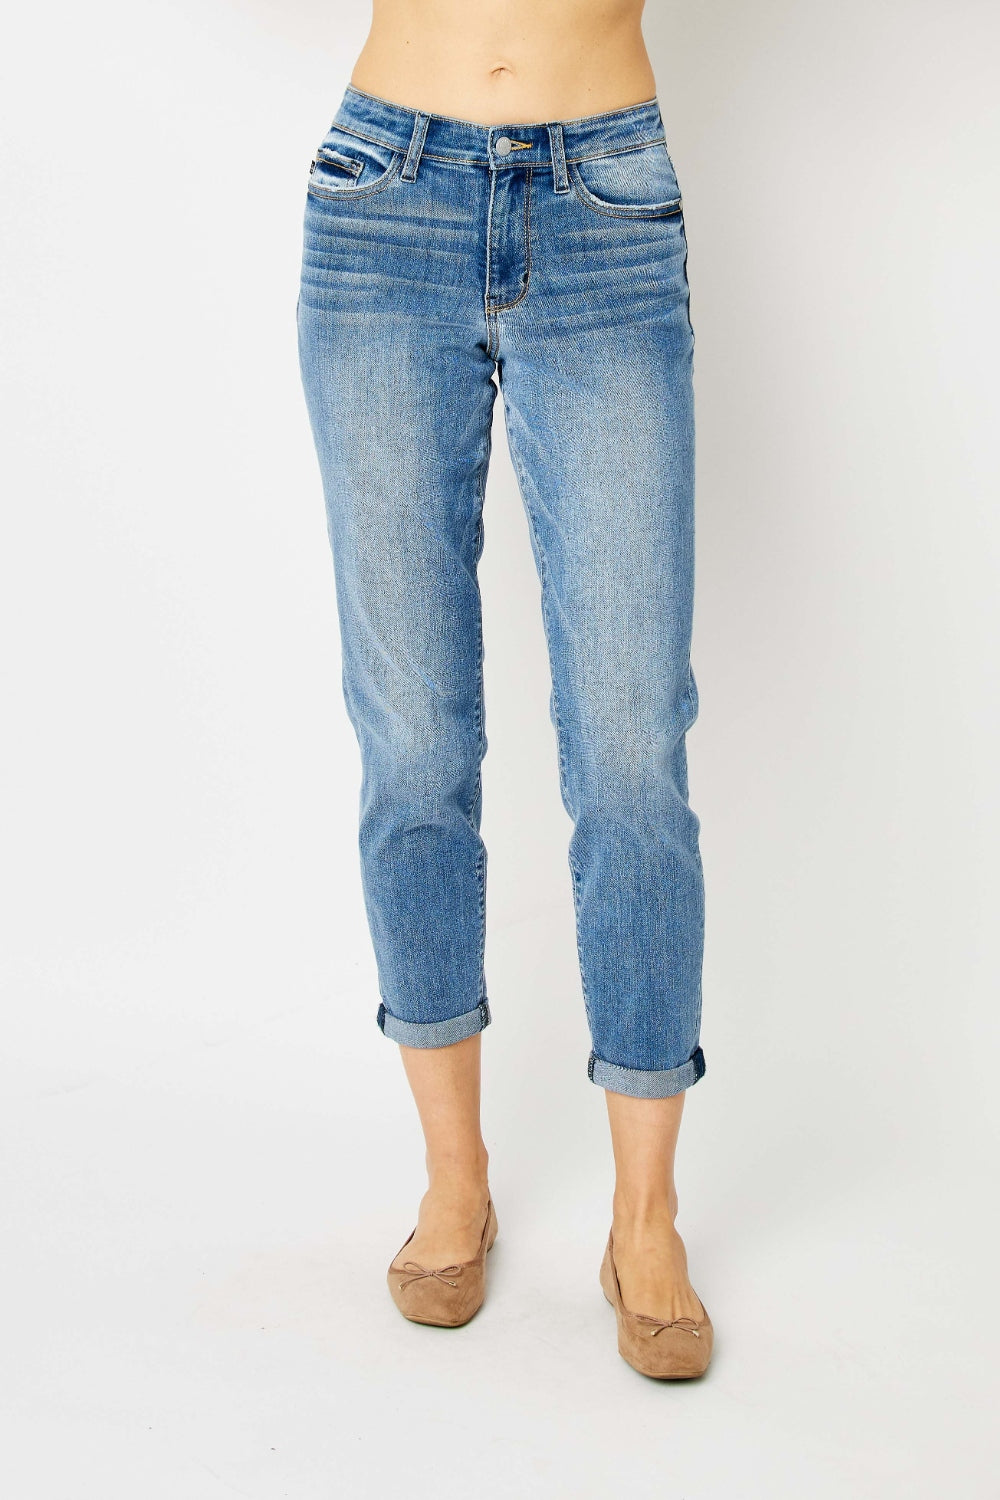 Judy Blue Full Size Cuffed Hem Slim Jeans